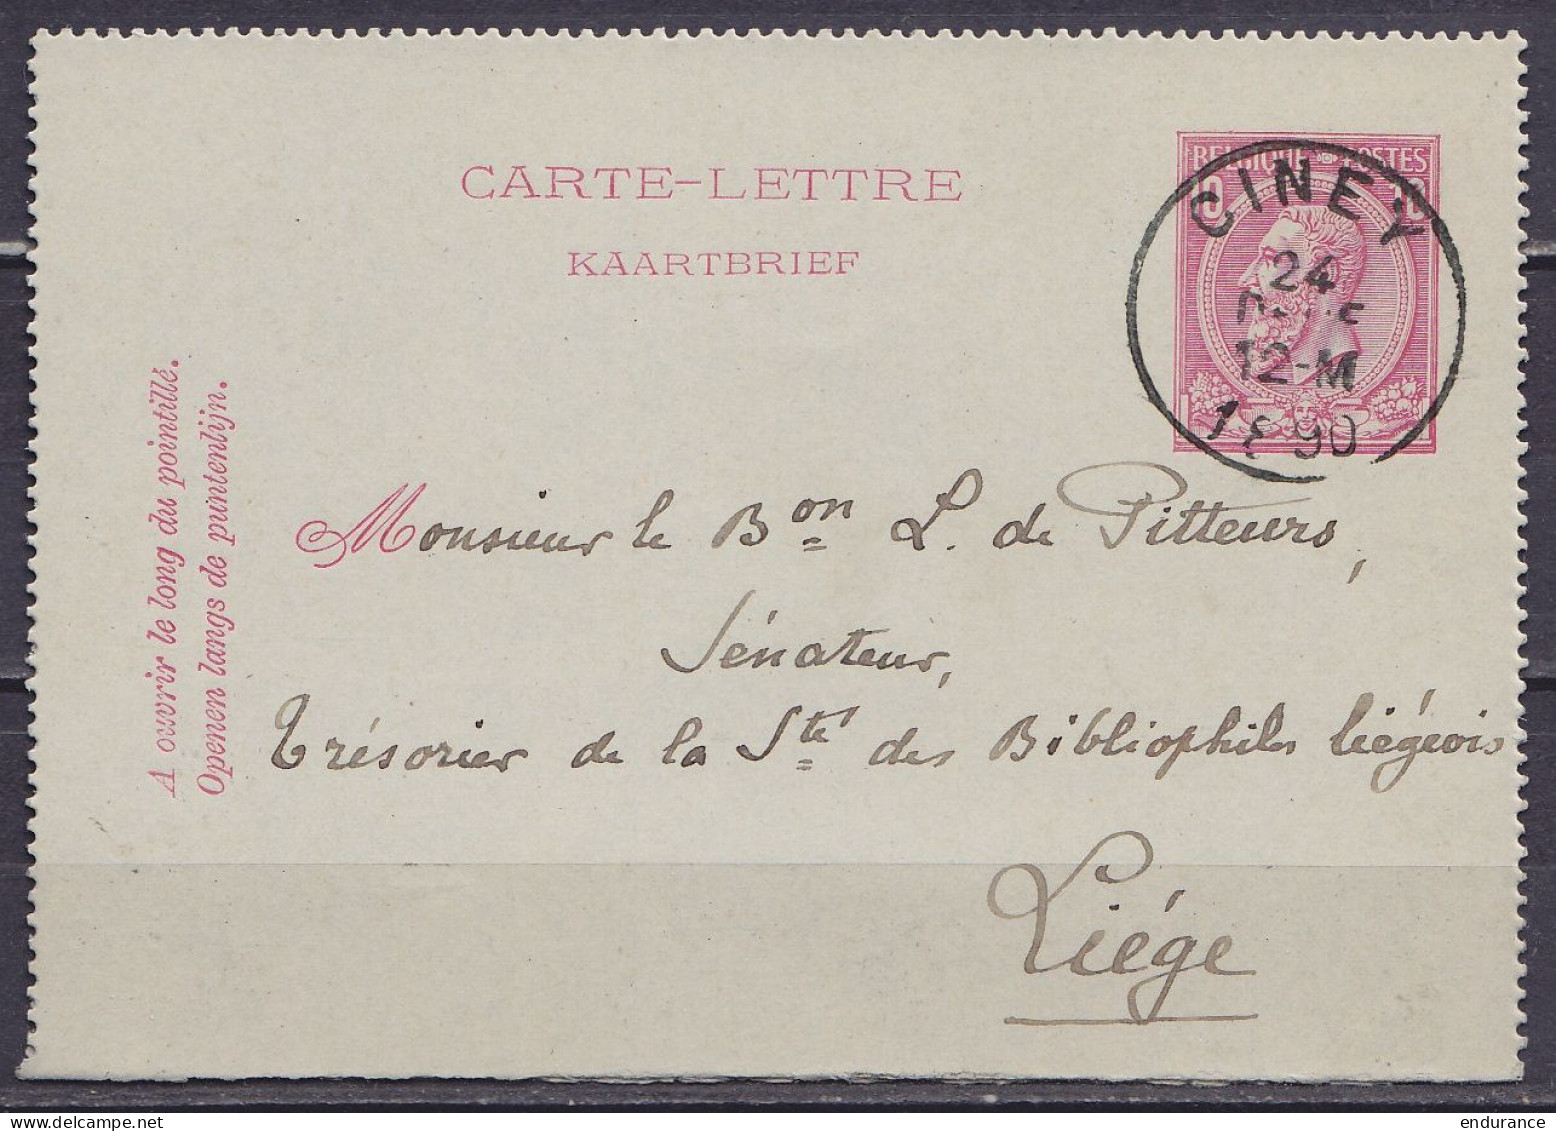 EP Carte-lettre 10c Rose (N°46) Càd CINEY /24 DECE 1890 De Halloy Pour LIEGE (au Dos: Càd LIEGE) - Carte-Lettere